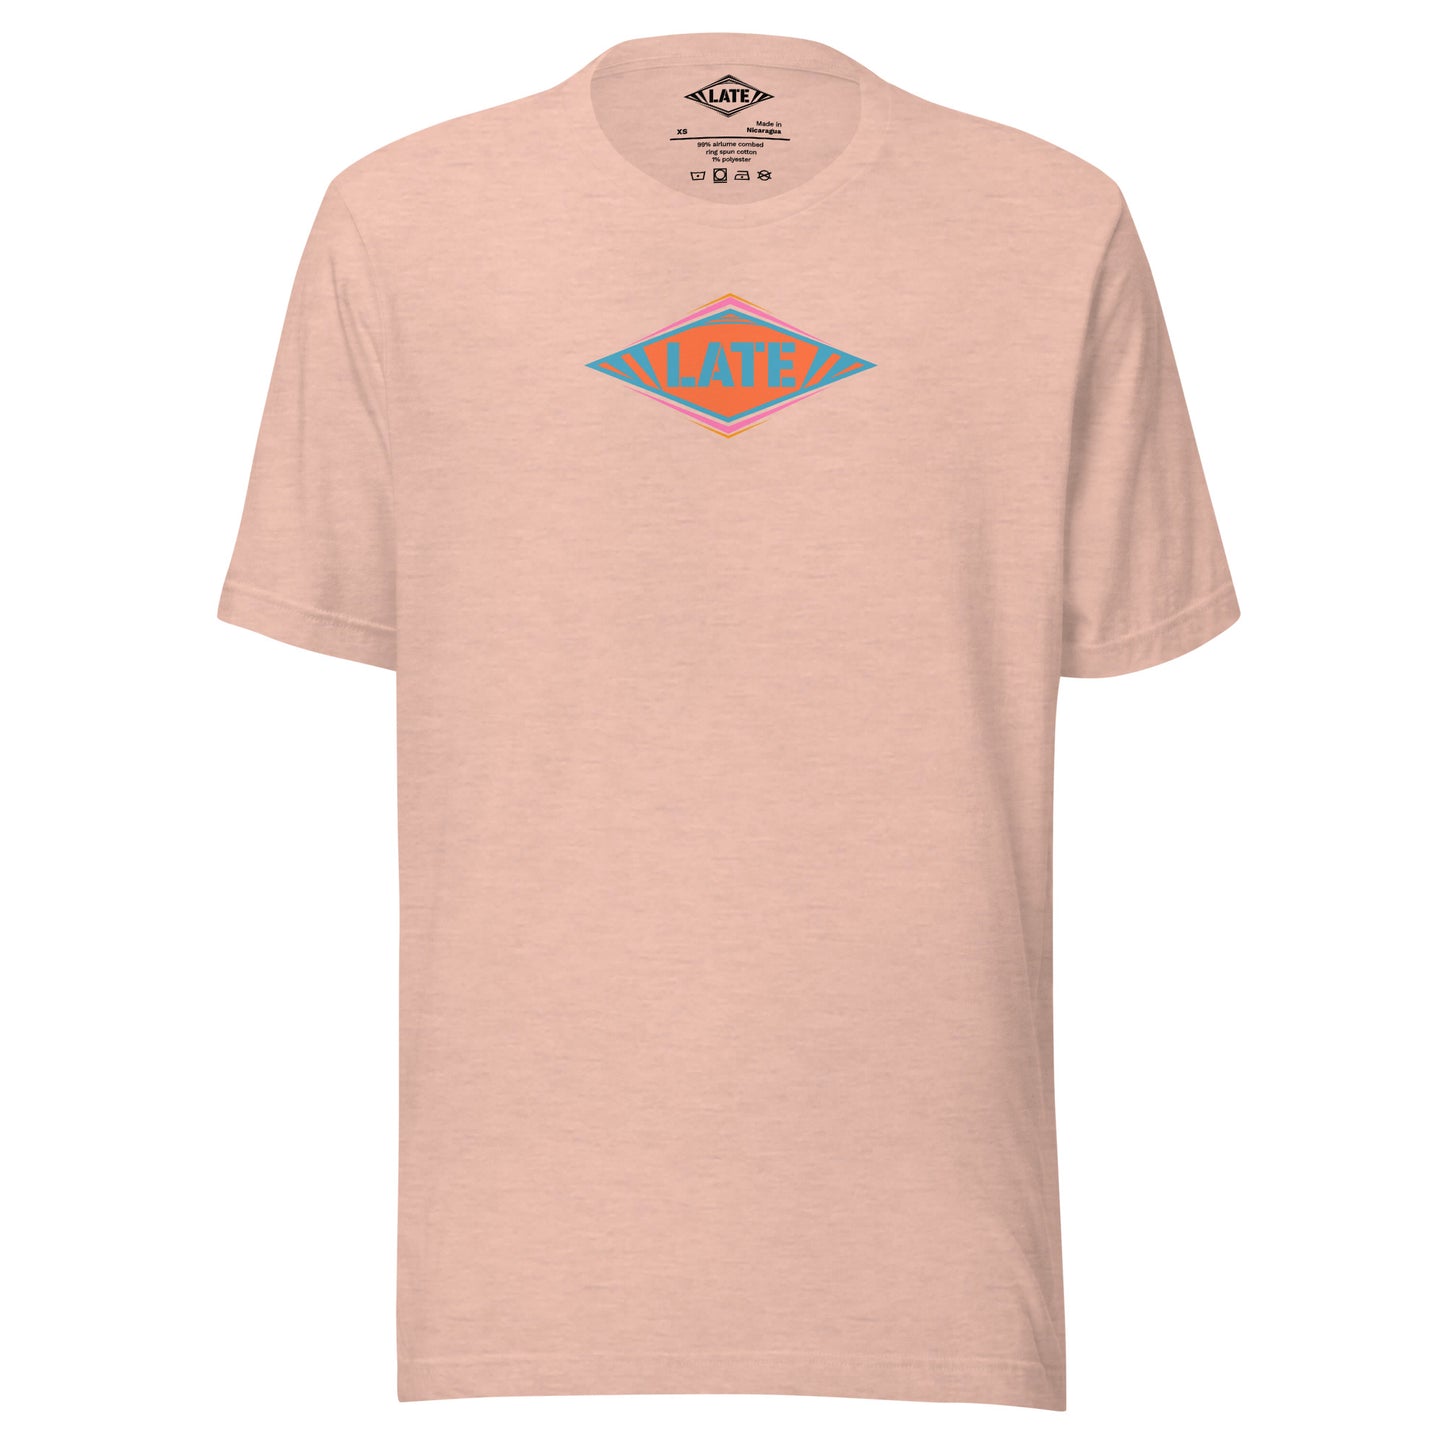 T-Shirt skateboard logo Late coloré bleu orange et violet, t-shirt unisex couleur rose